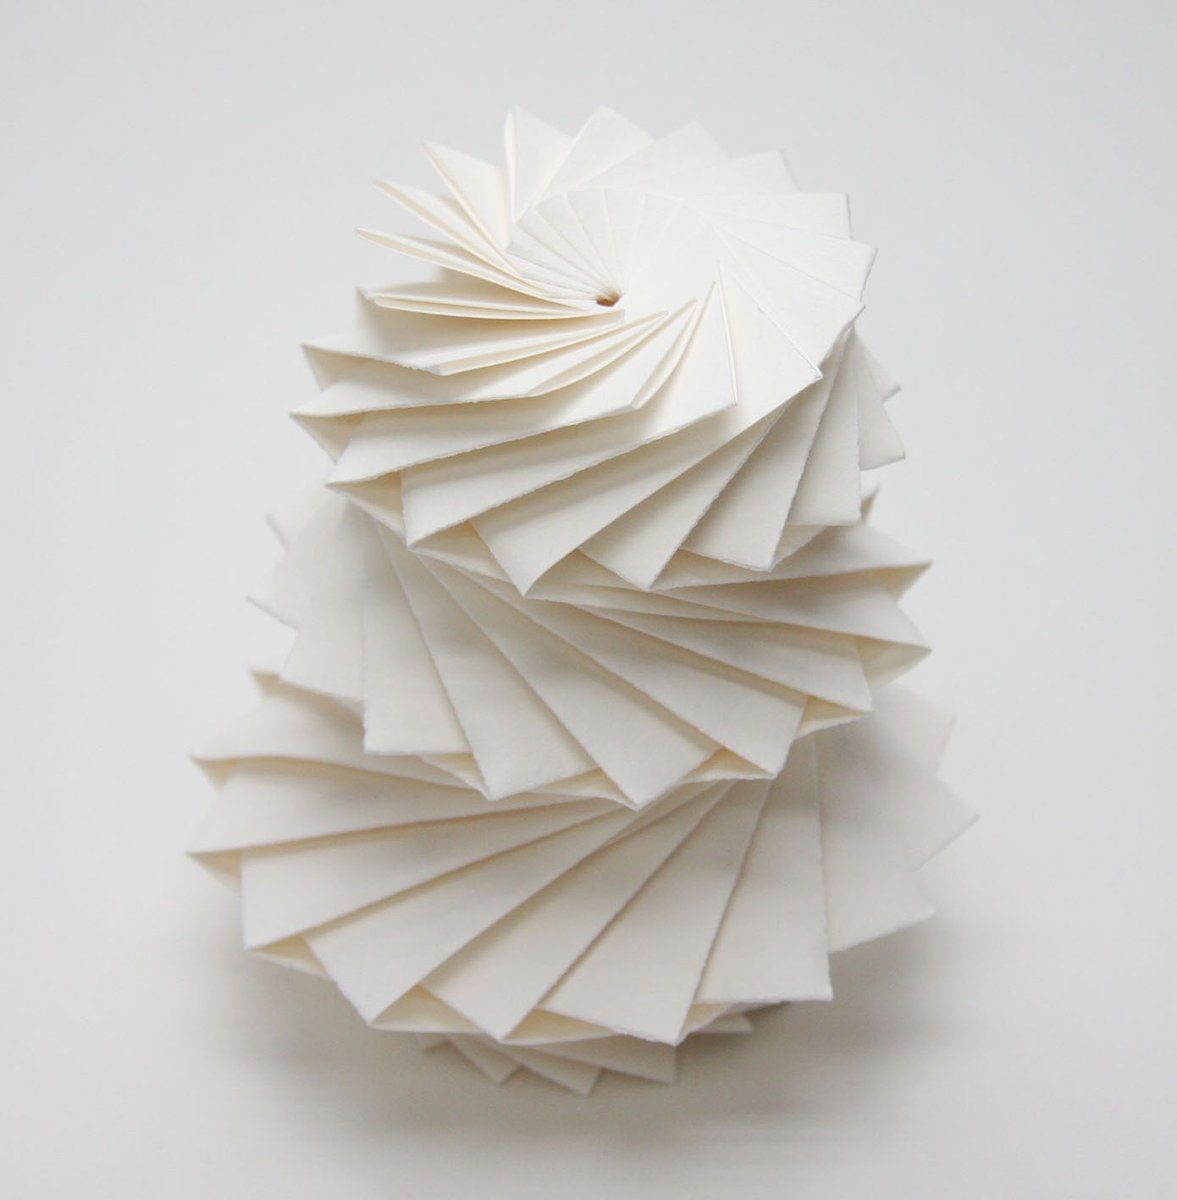 三谷 純 Jun Mitani 最近 自分の折り紙についてほとんどツイートしてないので 過去を振り返りつつ いくつか作品紹介したいと思います 08年に 立体的な形を1枚の紙で作るためのソフトウェアを開発し このような幾何学的な折り紙作品を作れるように